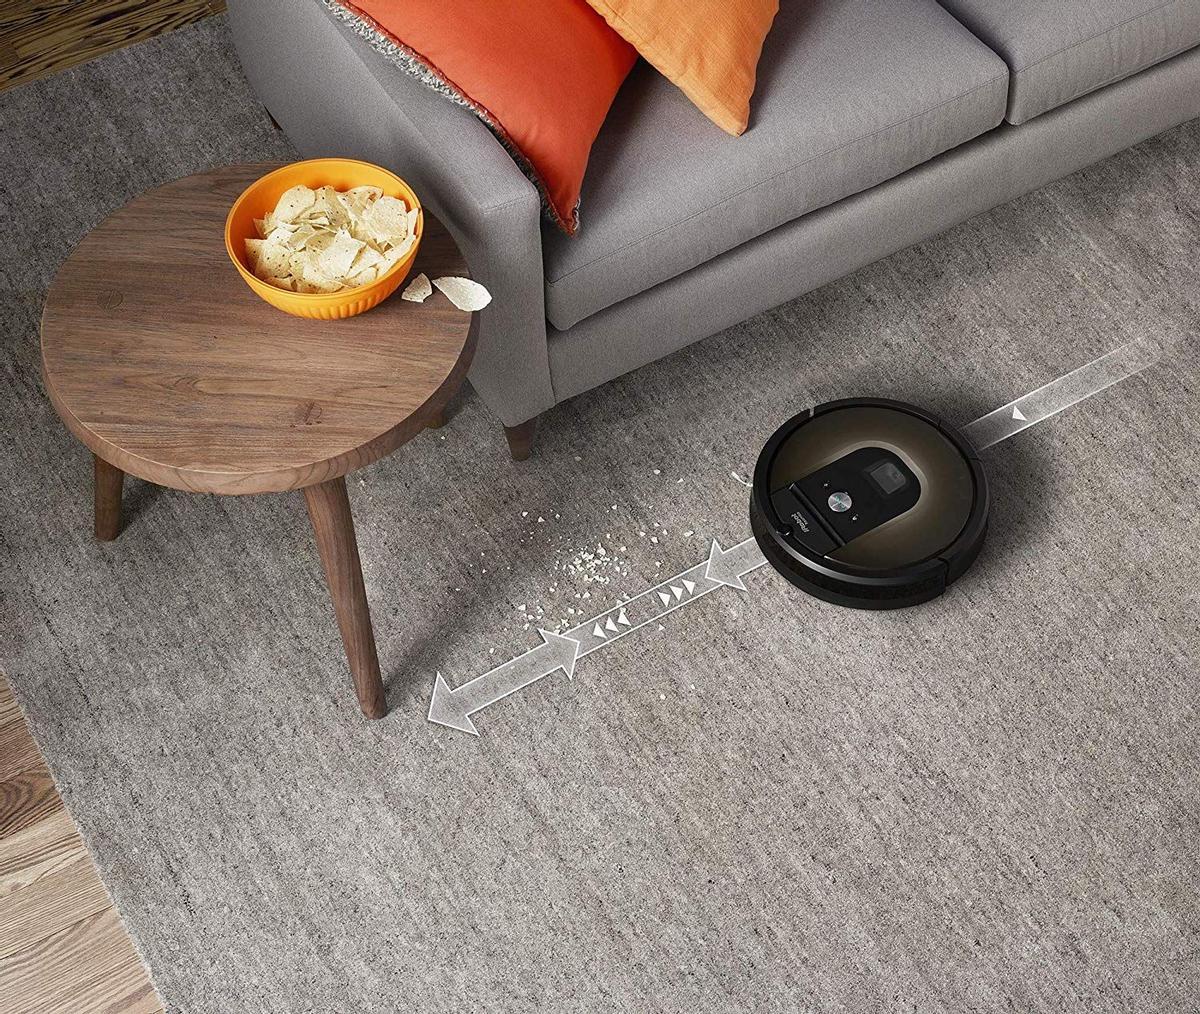 iRobot Roomba 981 Robot Aspirador para Alfombras con Potencia de Succión y Cepillos de Goma Antienredos, multi habitación, Tecnología Dirt Detect, Conexión WiFi y Programable por App, compatible Alexa